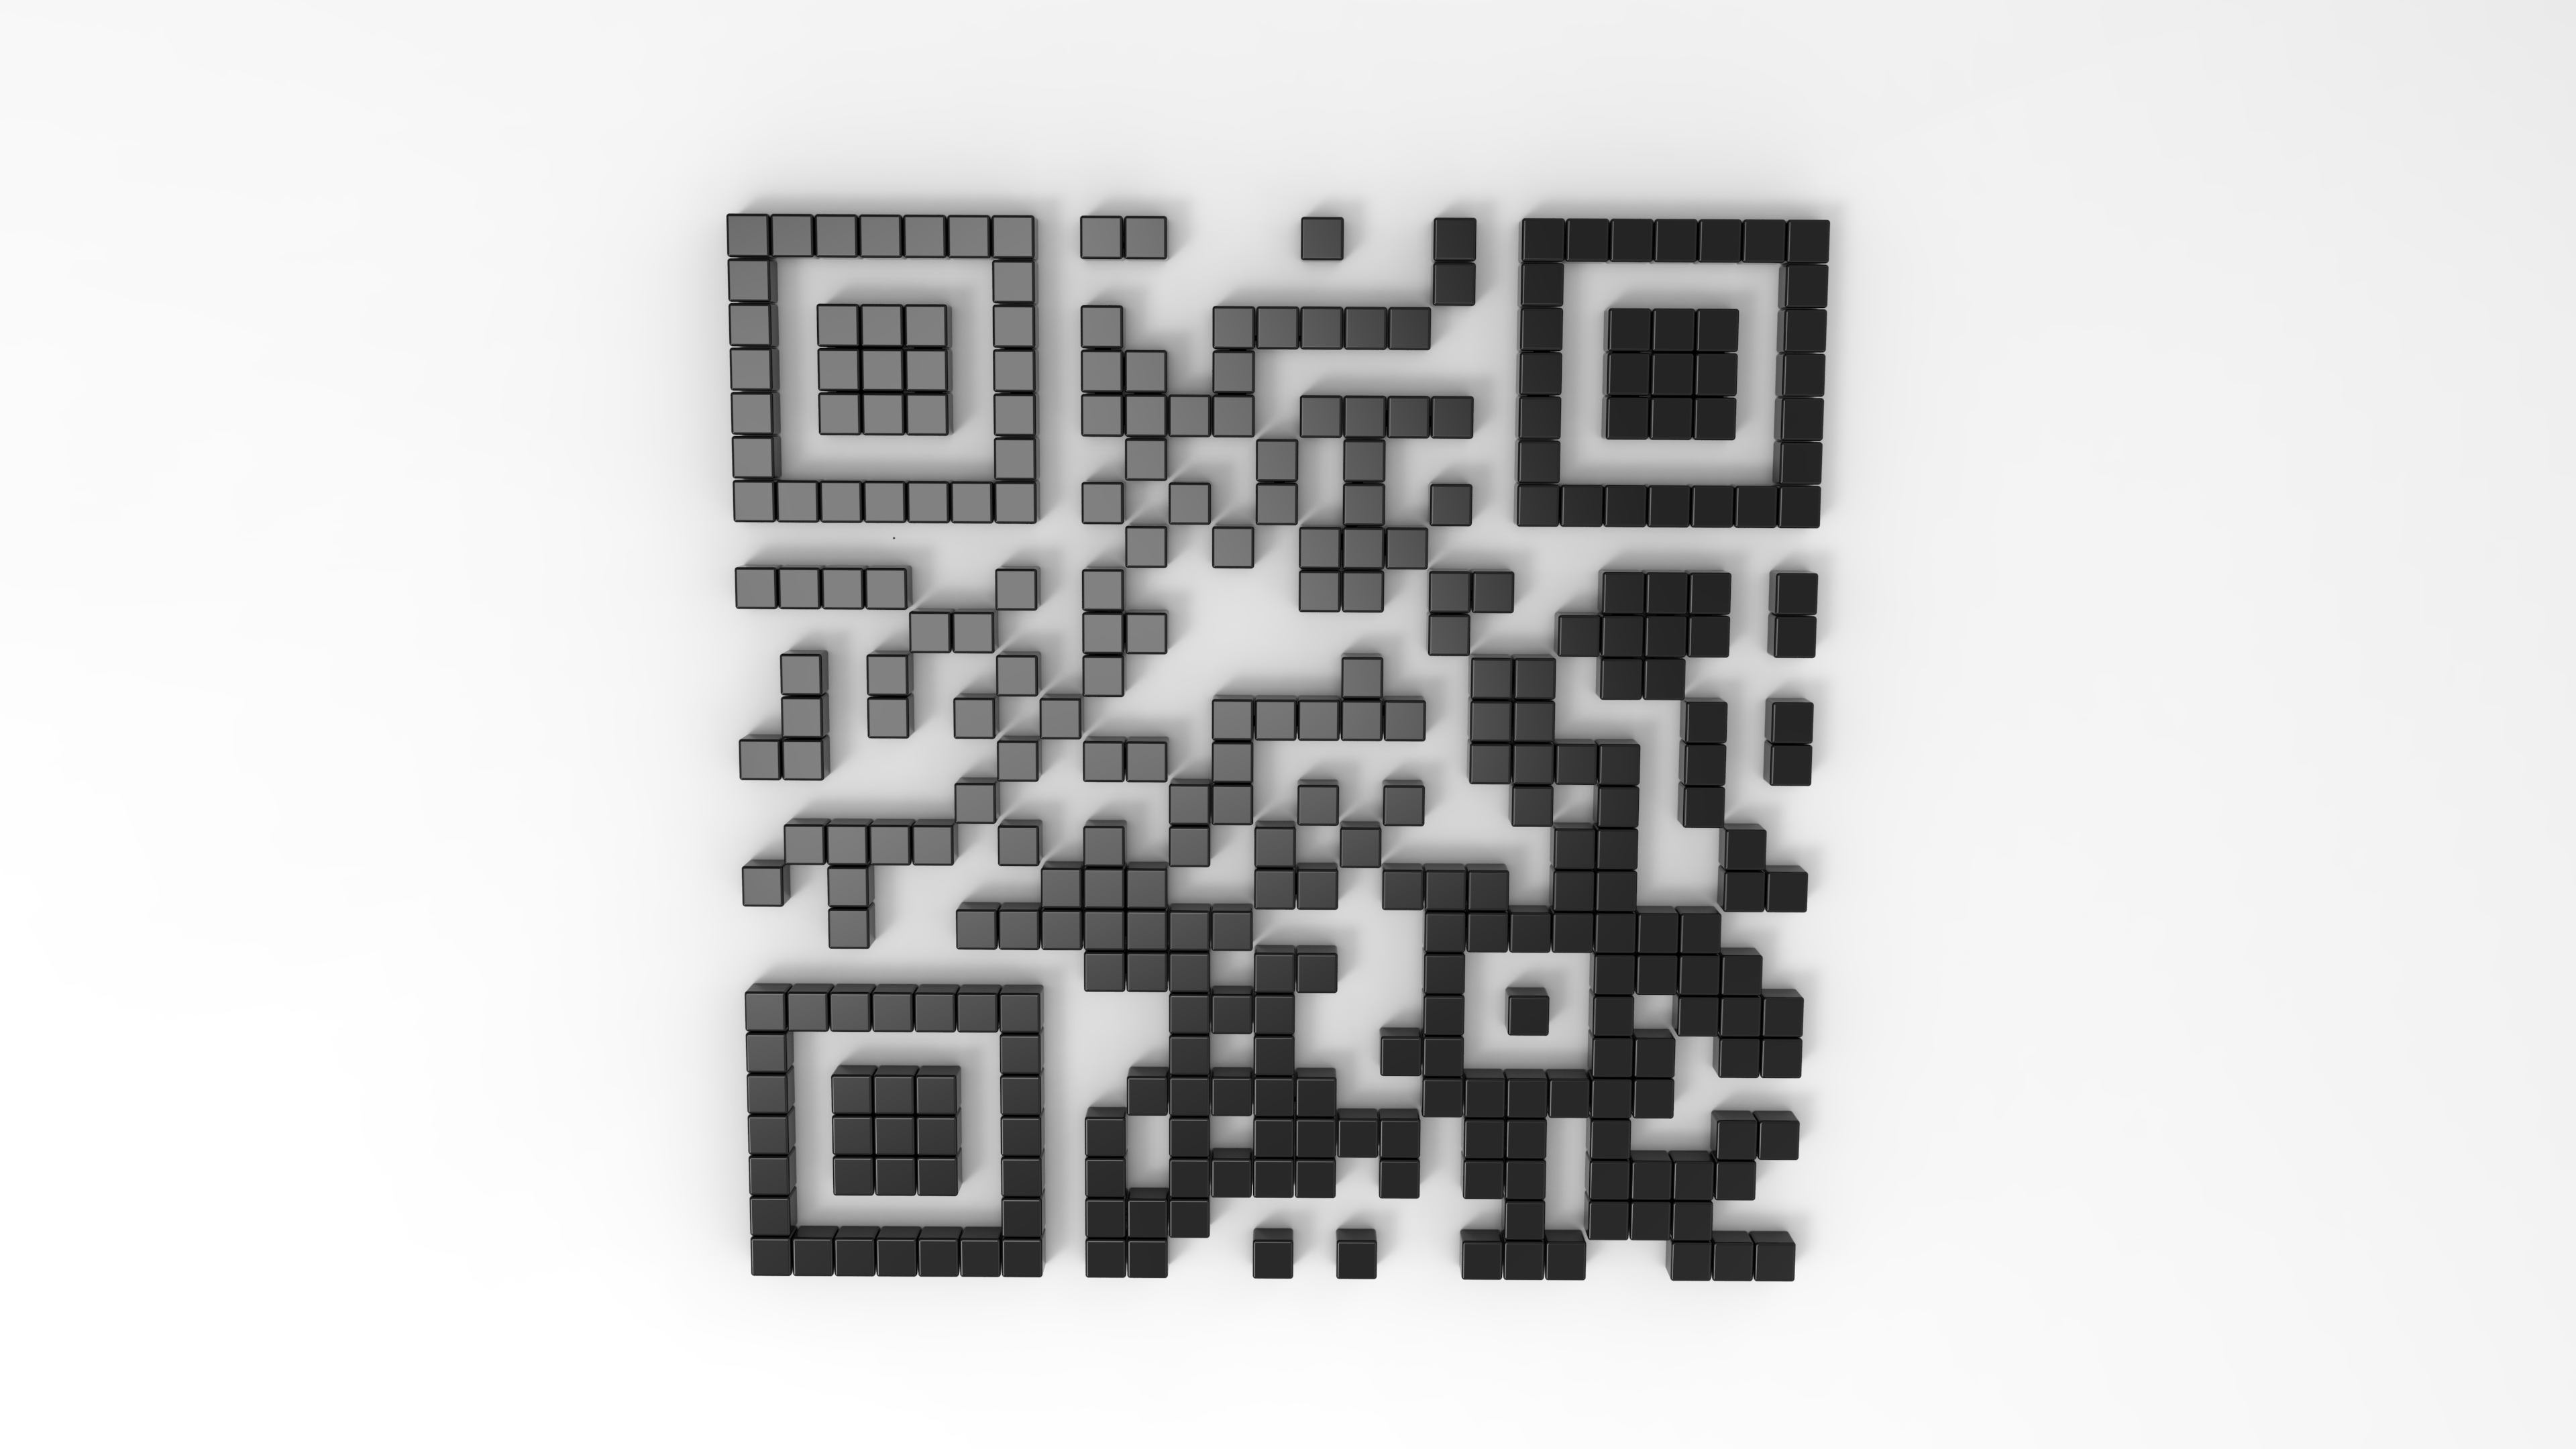 Qr код колонки. 3д QR код. D&S люстра с19450/2+2 QR код. Распечатка QR кодов. Куб с QR кодом.